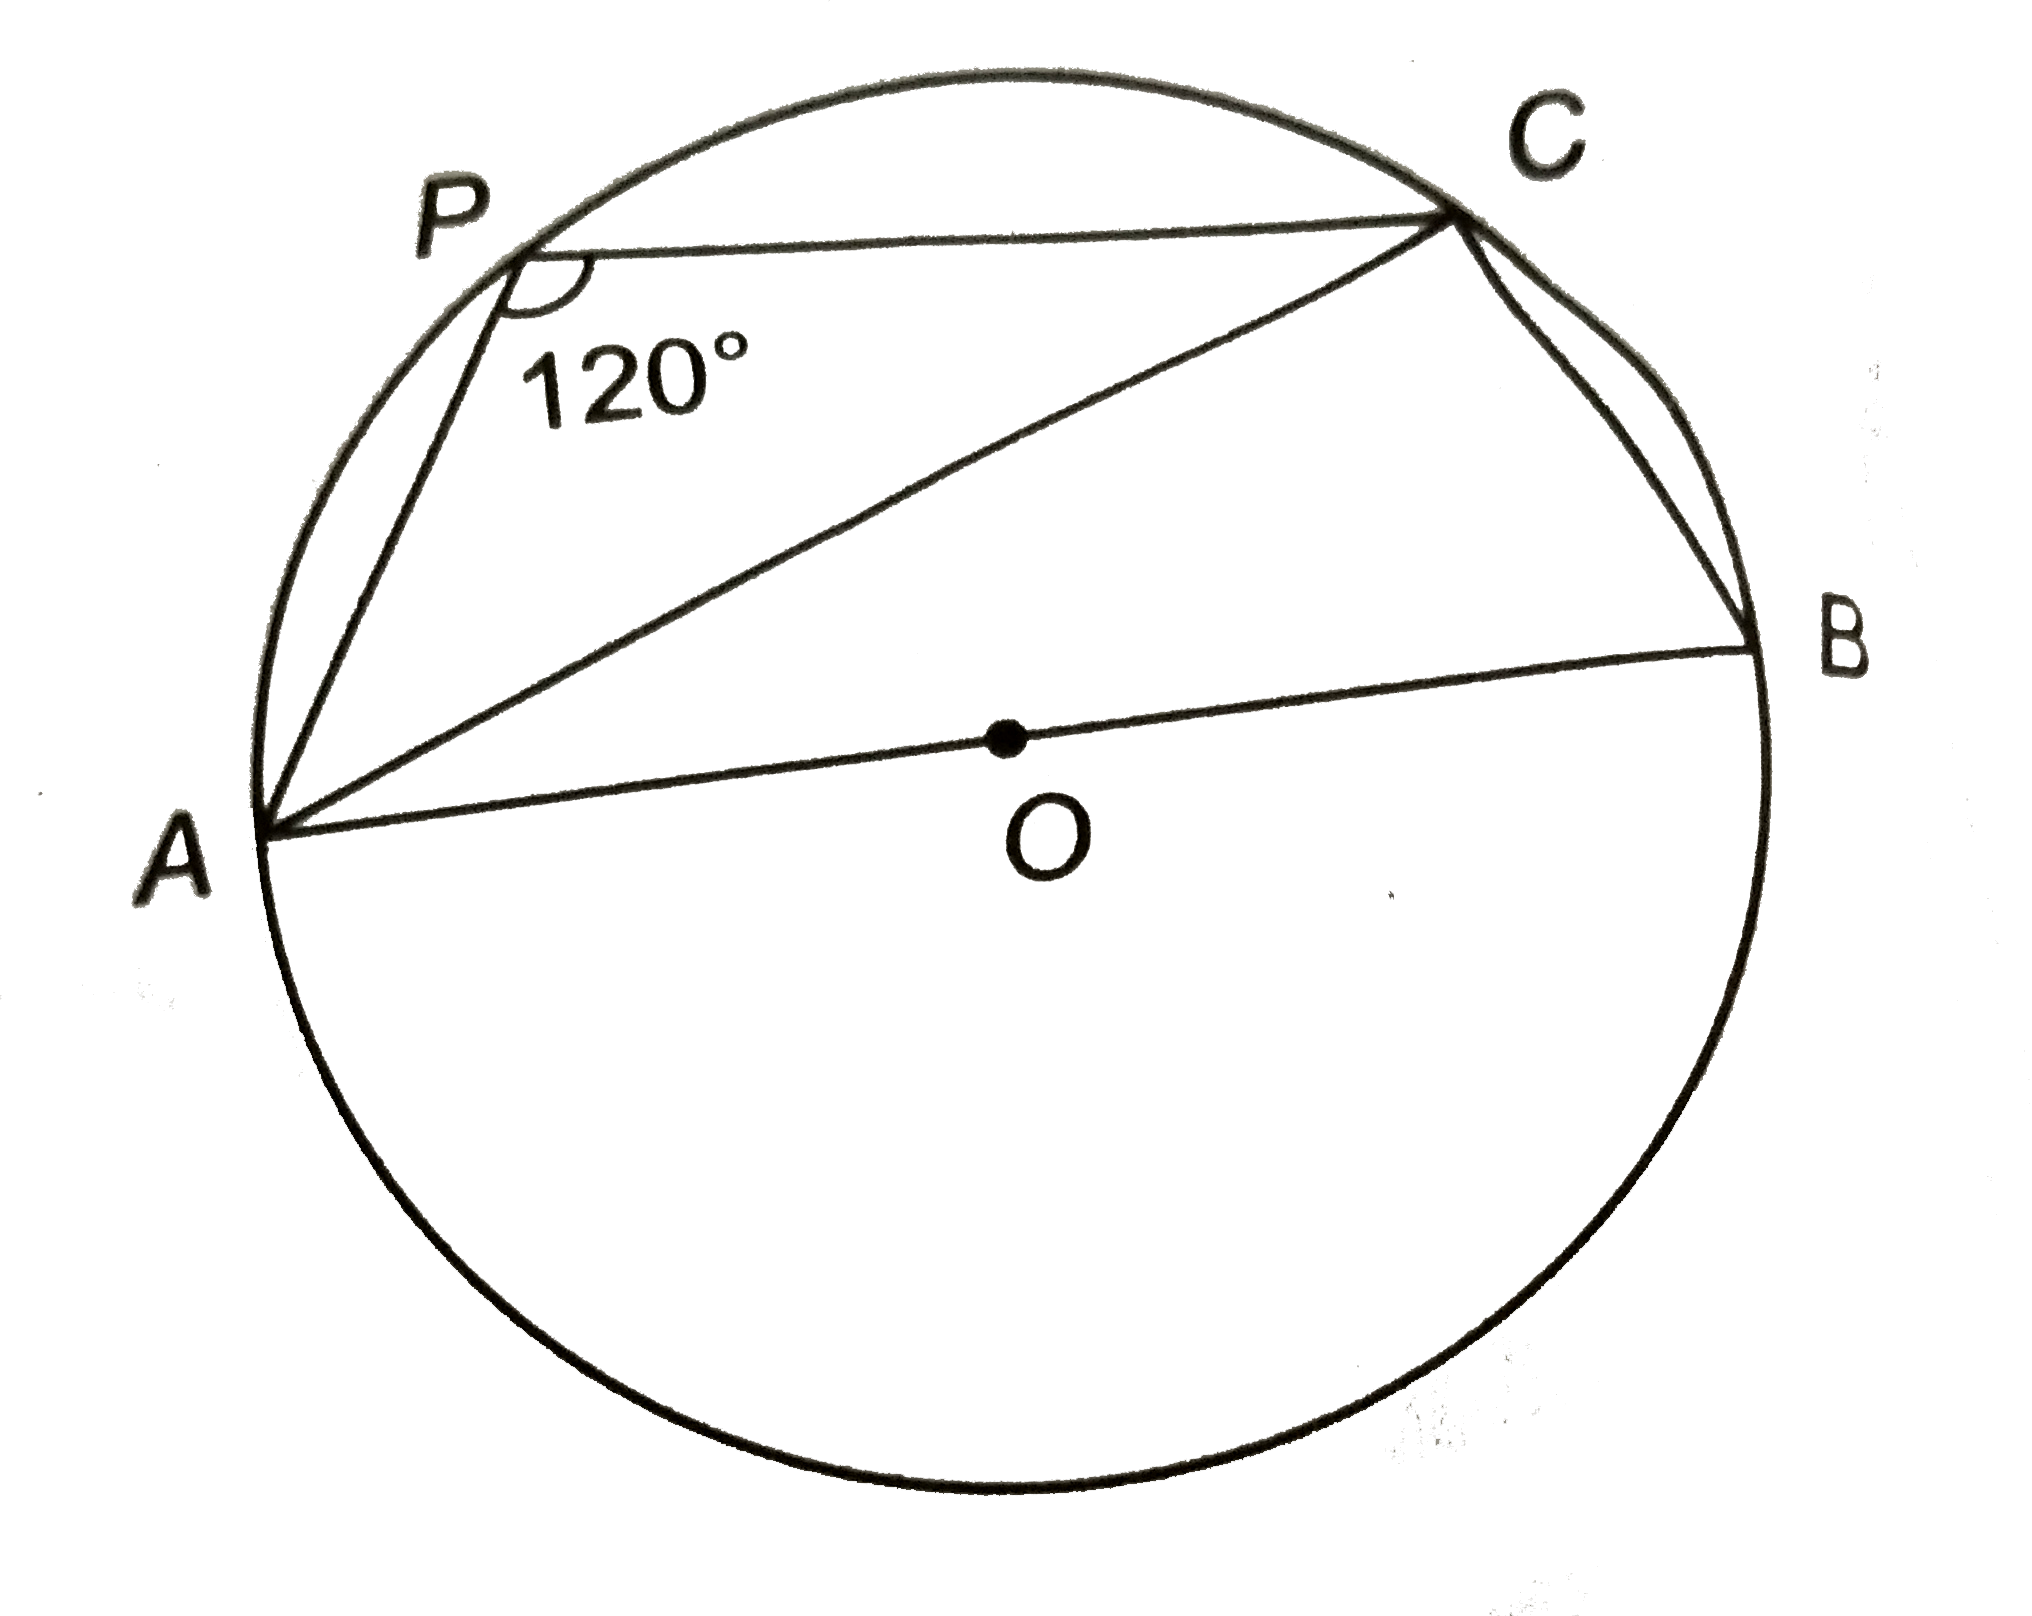 संलग्न चित्र में, ABCP एक चक्रीय चतुर्भुज है तथा AB वृत्त का व्यास है | यदि angleAPC=120^(@) है, तो angleCAB का मान ज्ञात कीजिए |